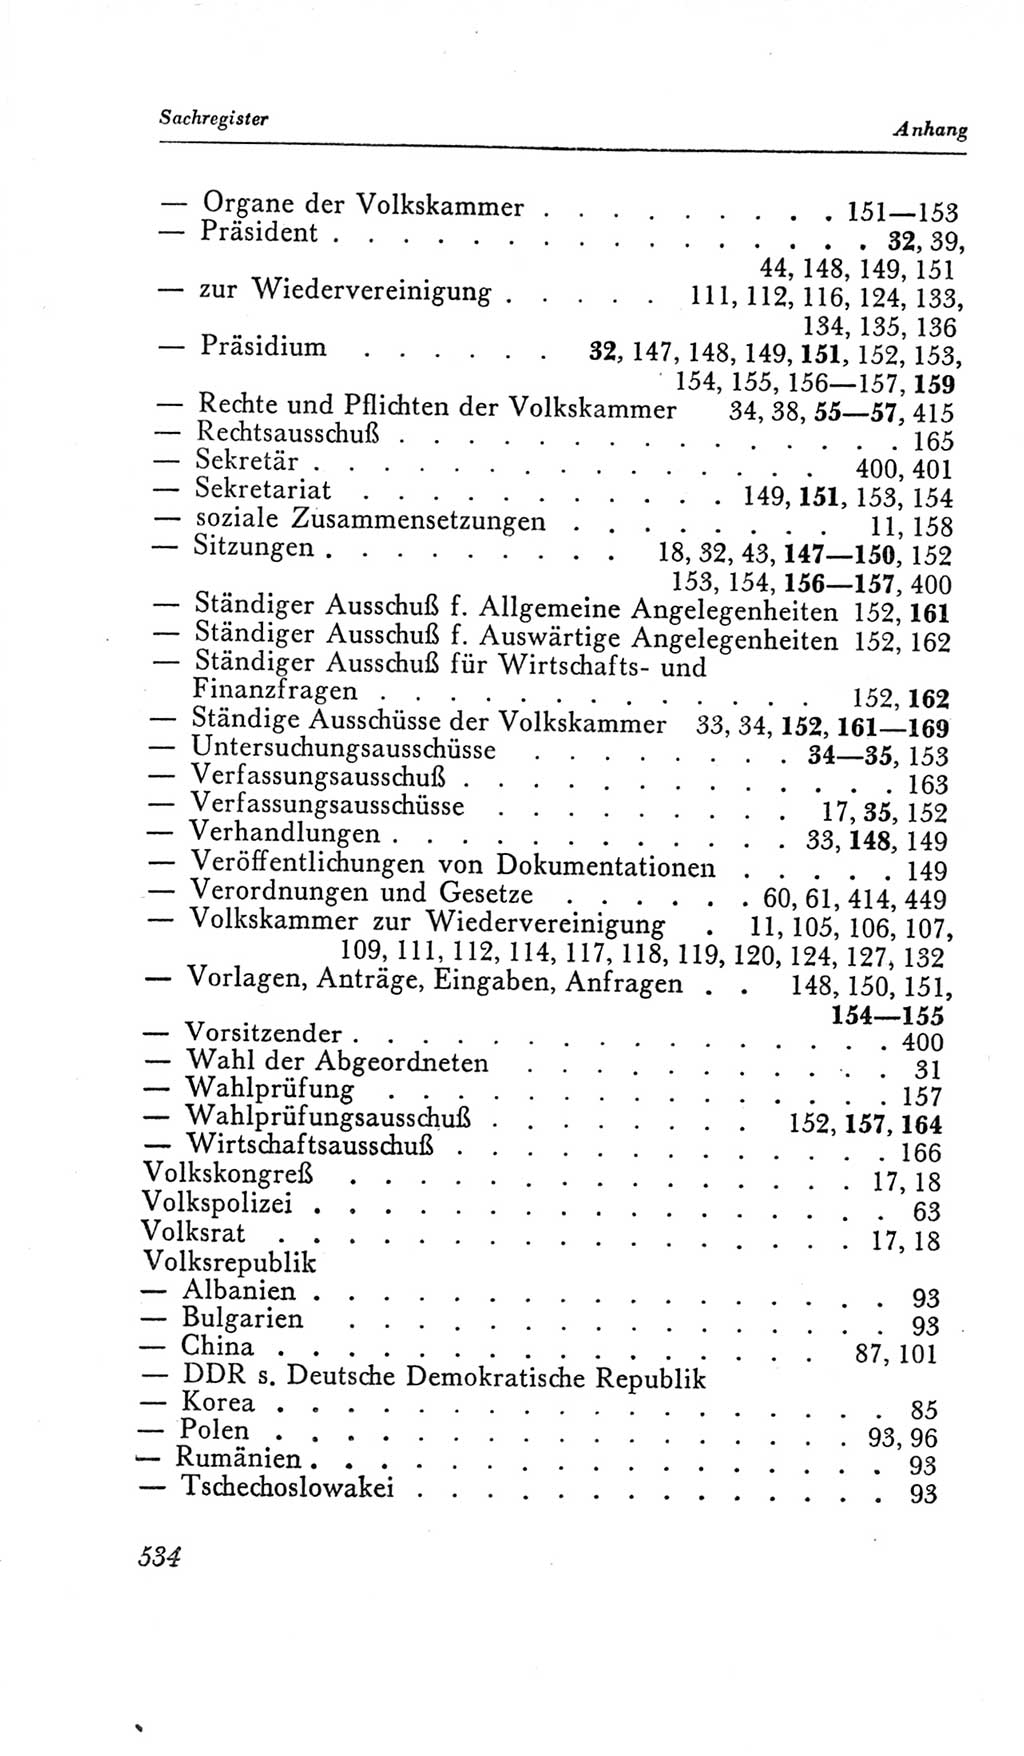 Handbuch der Volkskammer (VK) der Deutschen Demokratischen Republik (DDR), 2. Wahlperiode 1954-1958, Seite 534 (Hdb. VK. DDR, 2. WP. 1954-1958, S. 534)